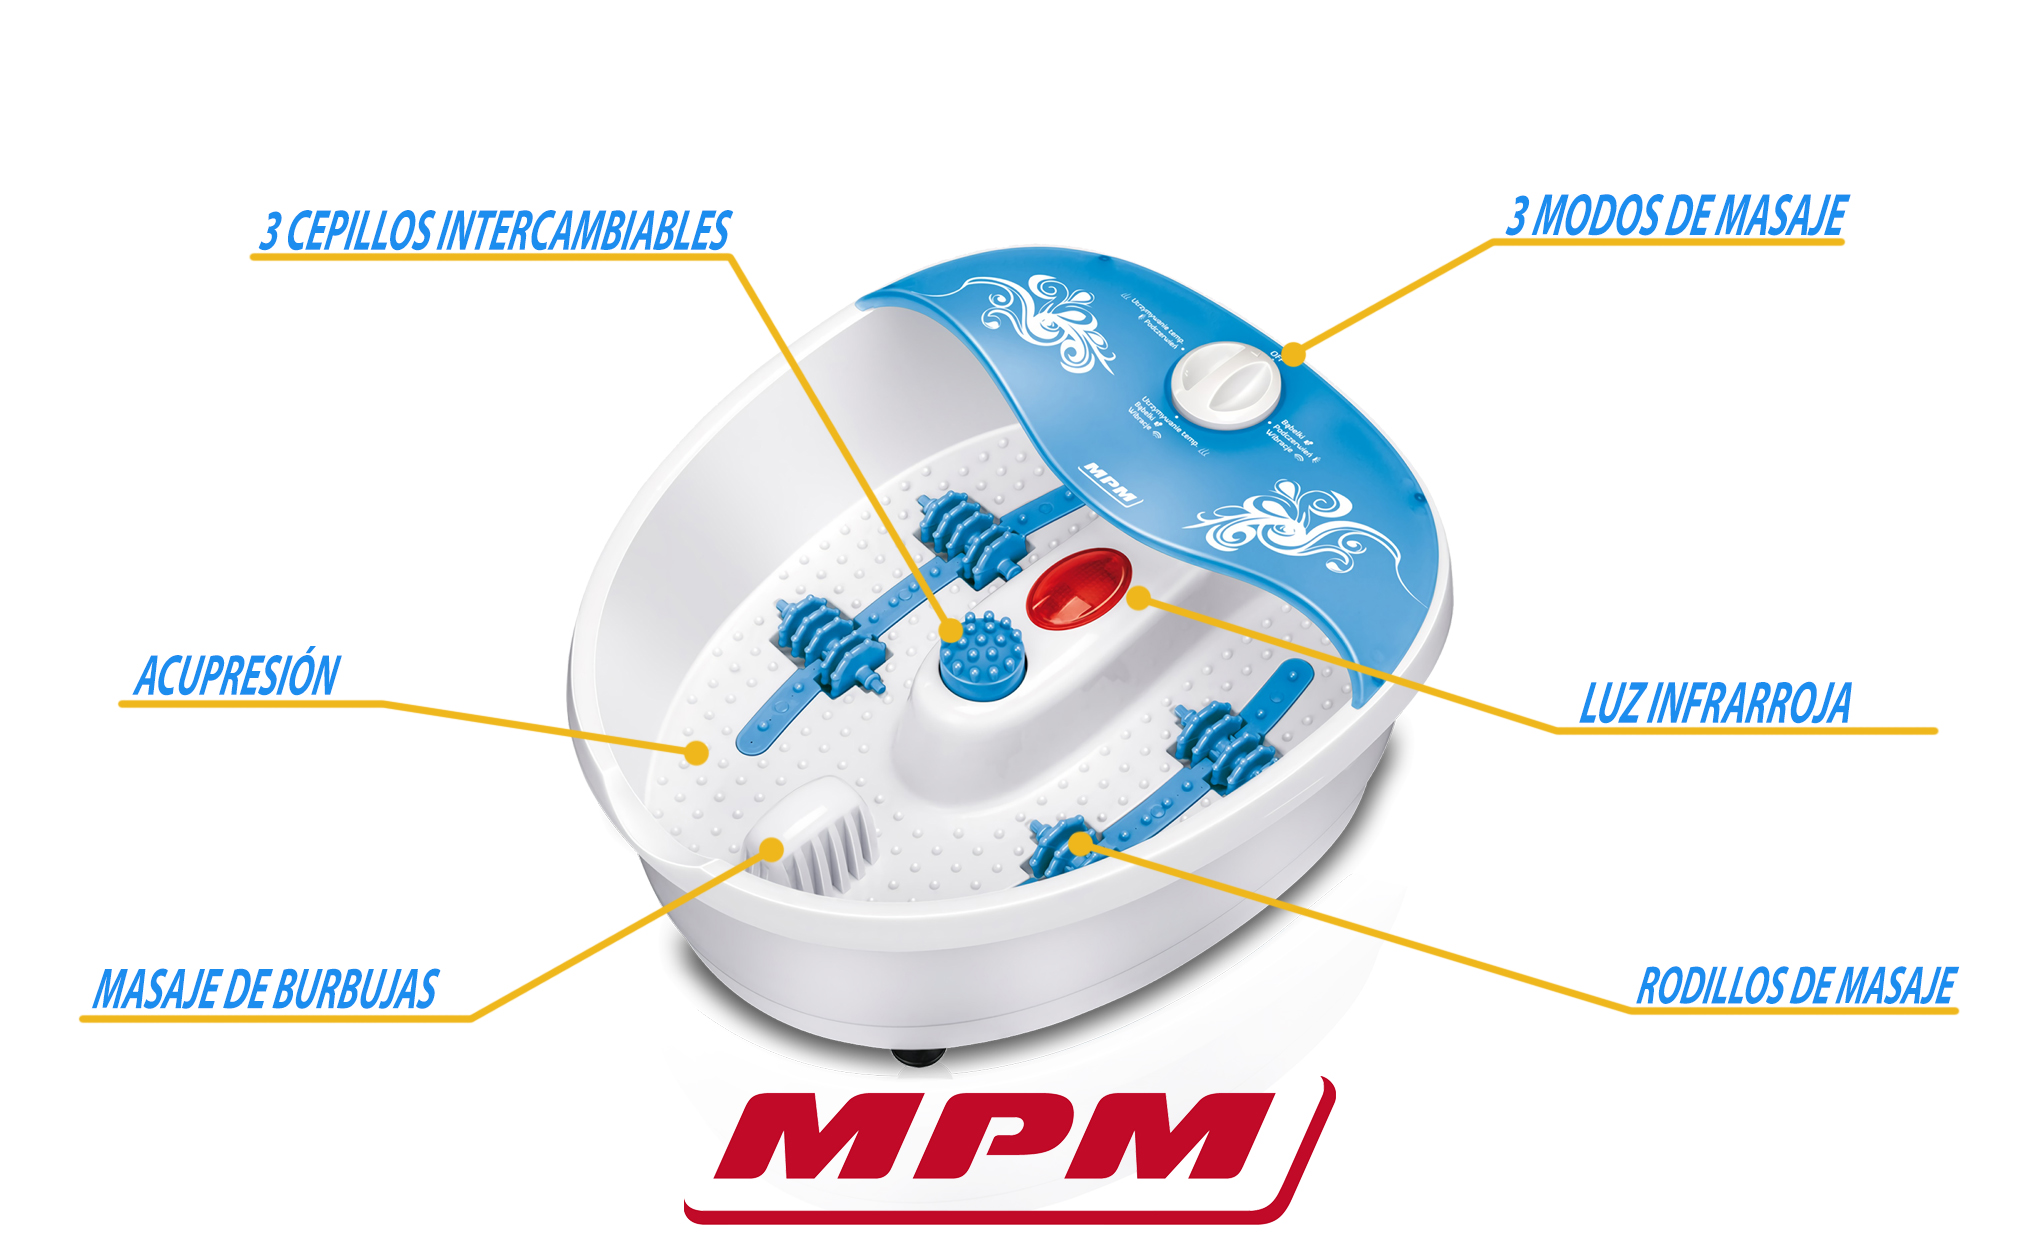 MPM MMS-01 Masajeador de Pies con Agua, masaje de Burbujas y por vibración, Control de Temperatura por infrarrojos, Cepillos intercambiables, 70W